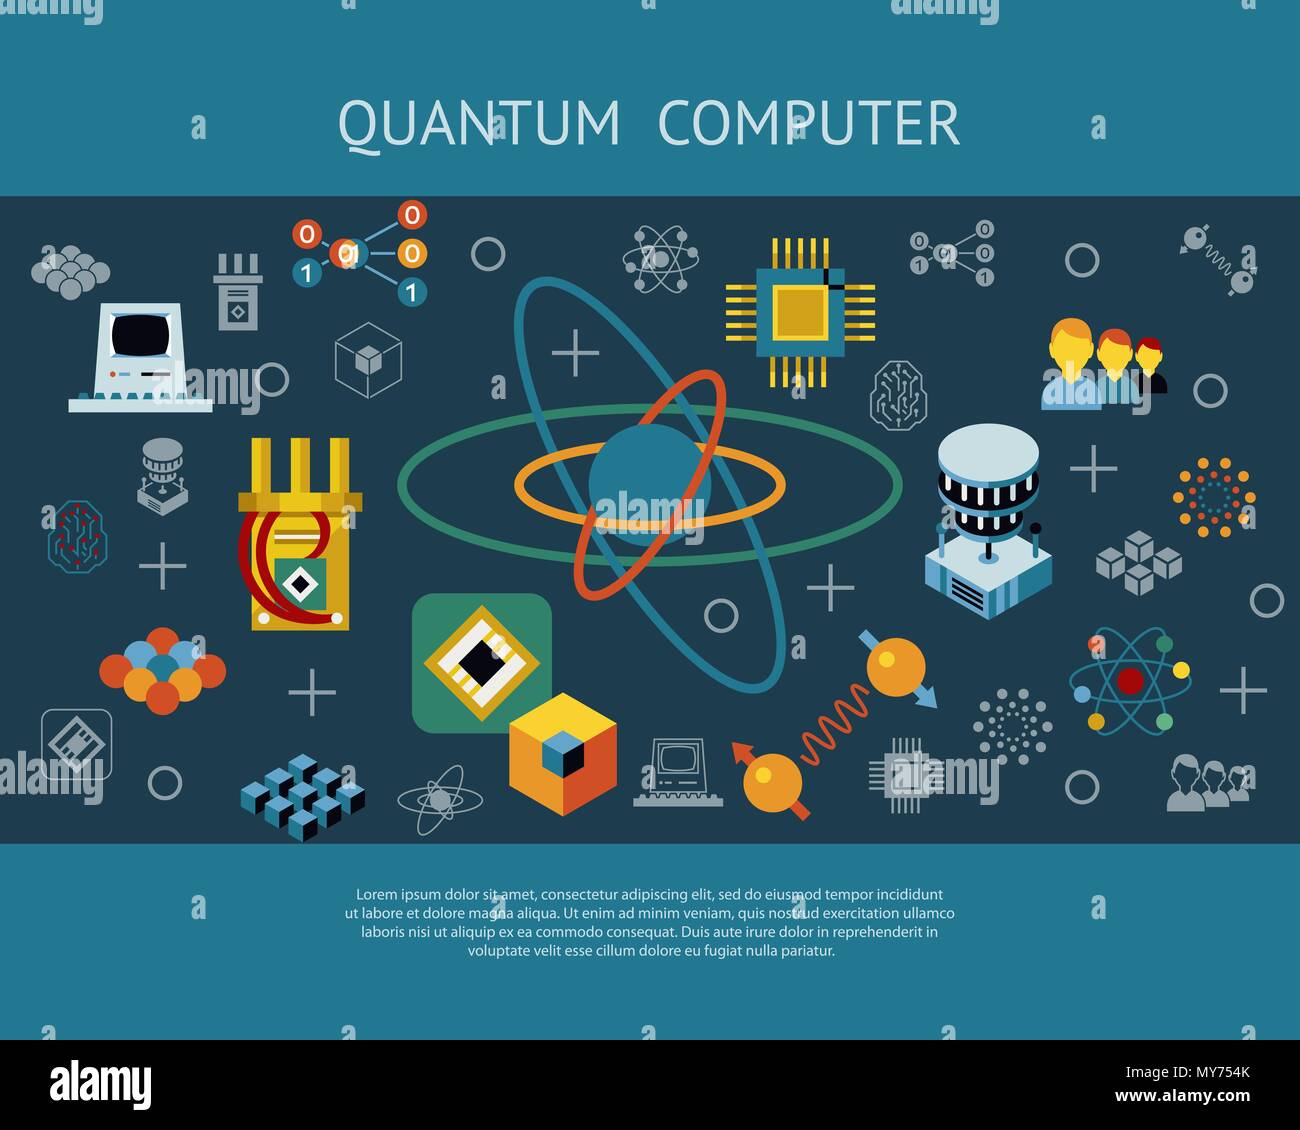 Путешествие в микровселенную квантовые вычисления ответы